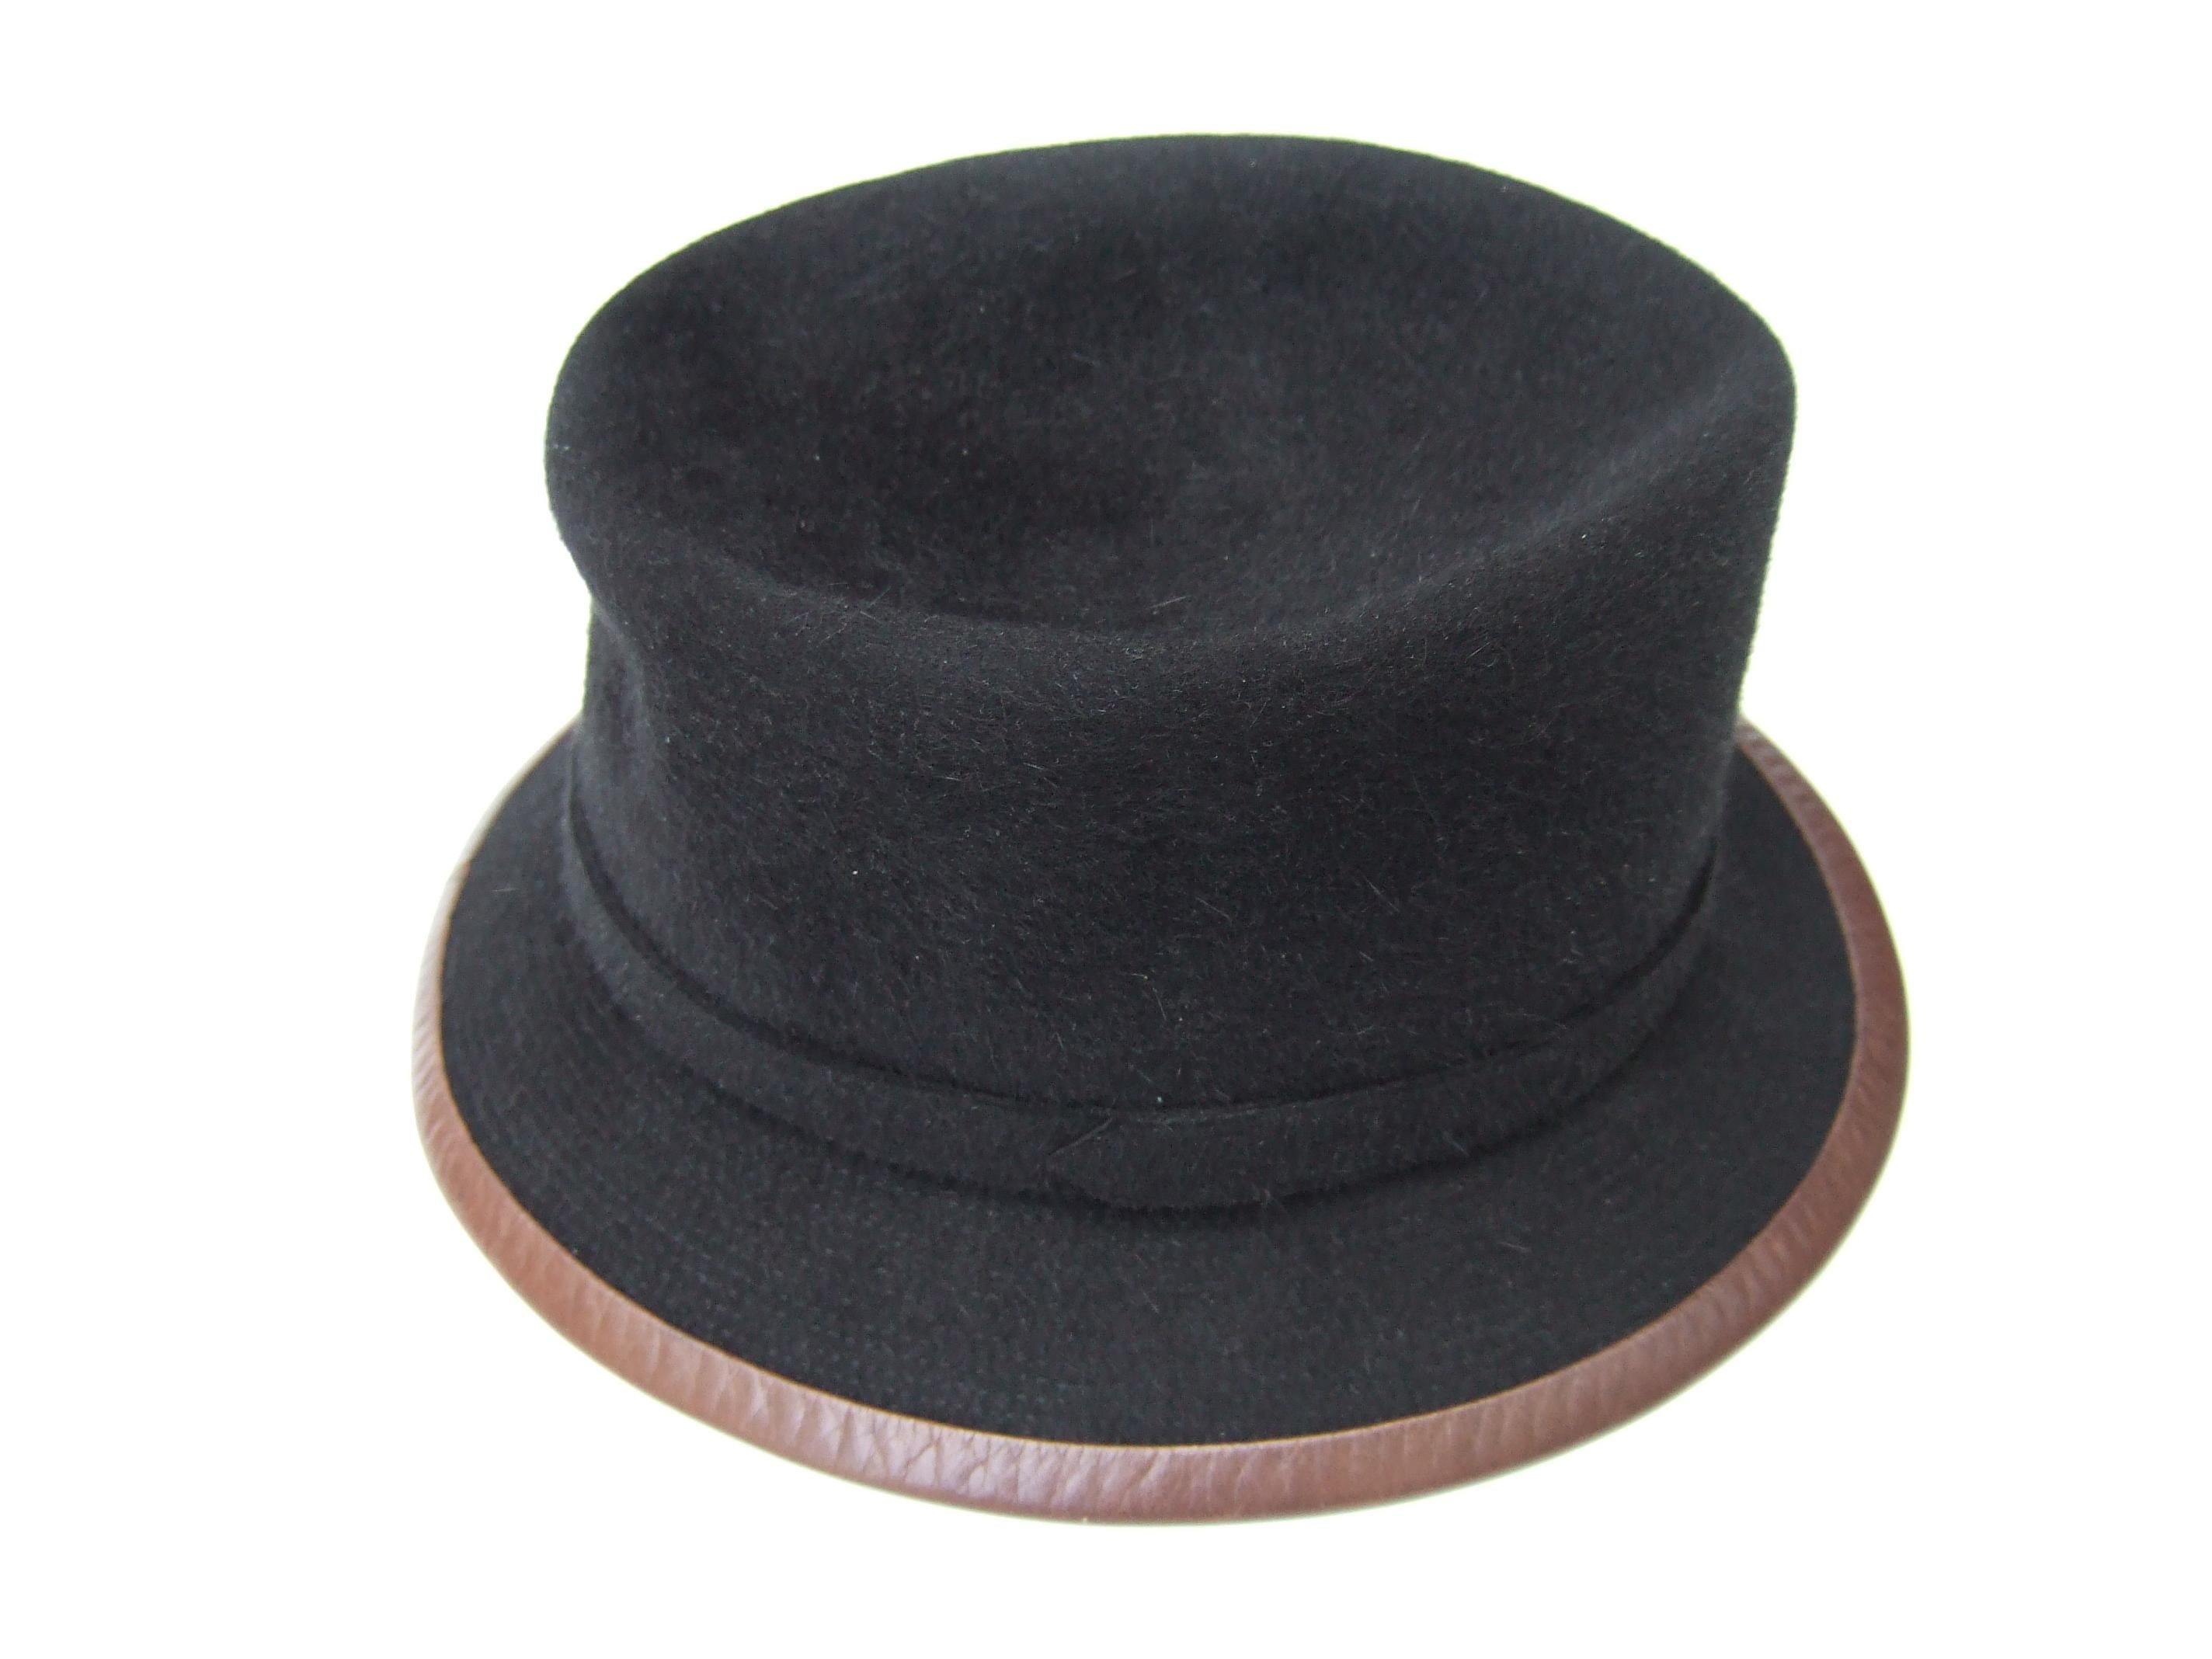 Hermes Paris Black Wool Leather Trim Hat Labeled Motsch Chapeaux Pour Hermes  For Sale 5